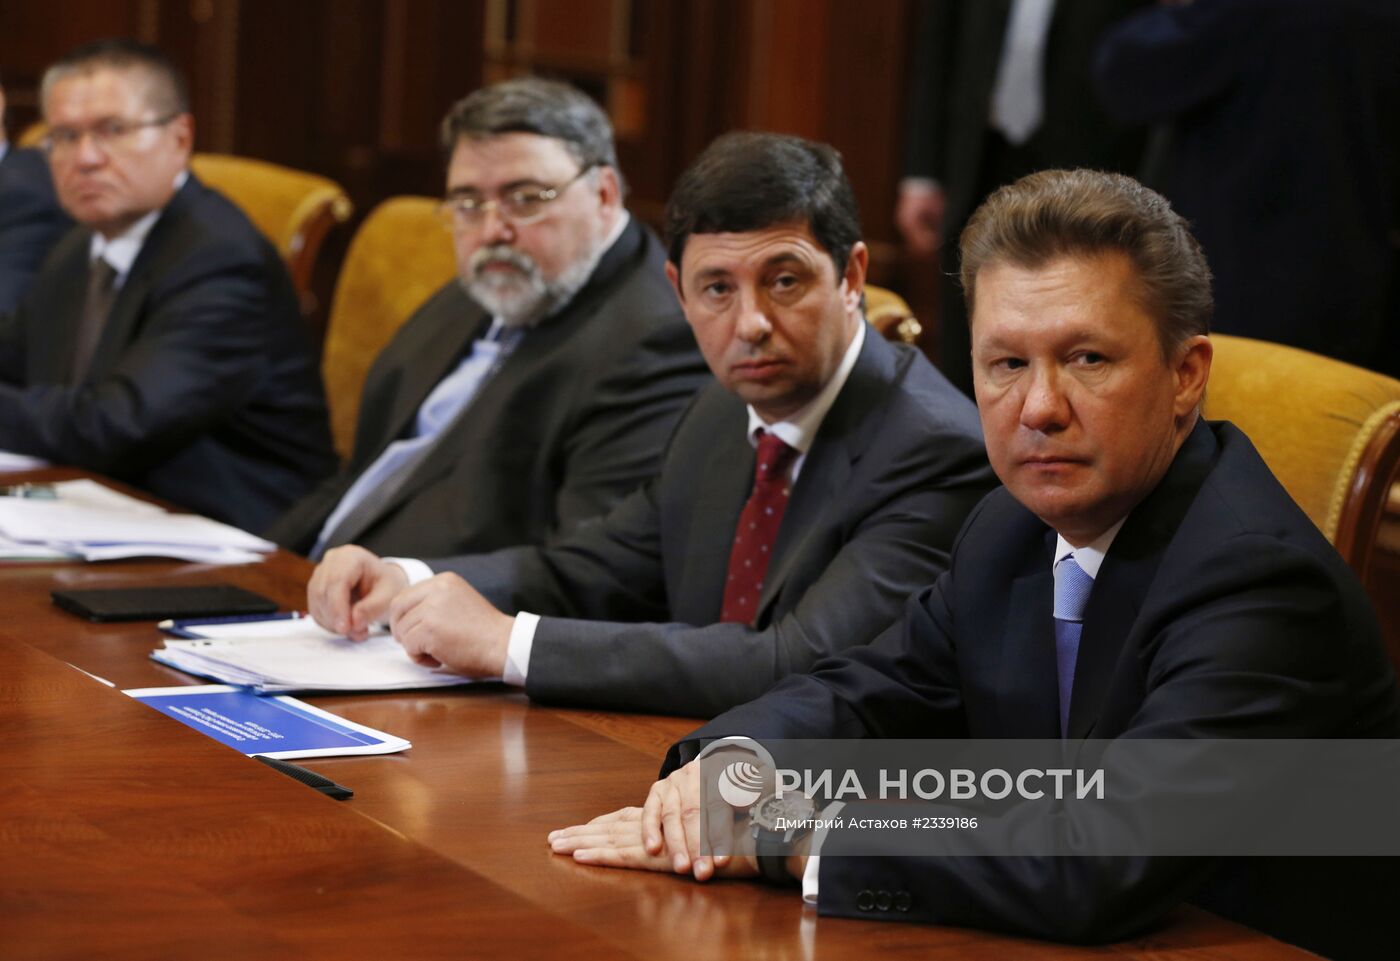 Совещание об инвестиционной программе и бюджете ОАО "Газпром" на 2014–2016 годы